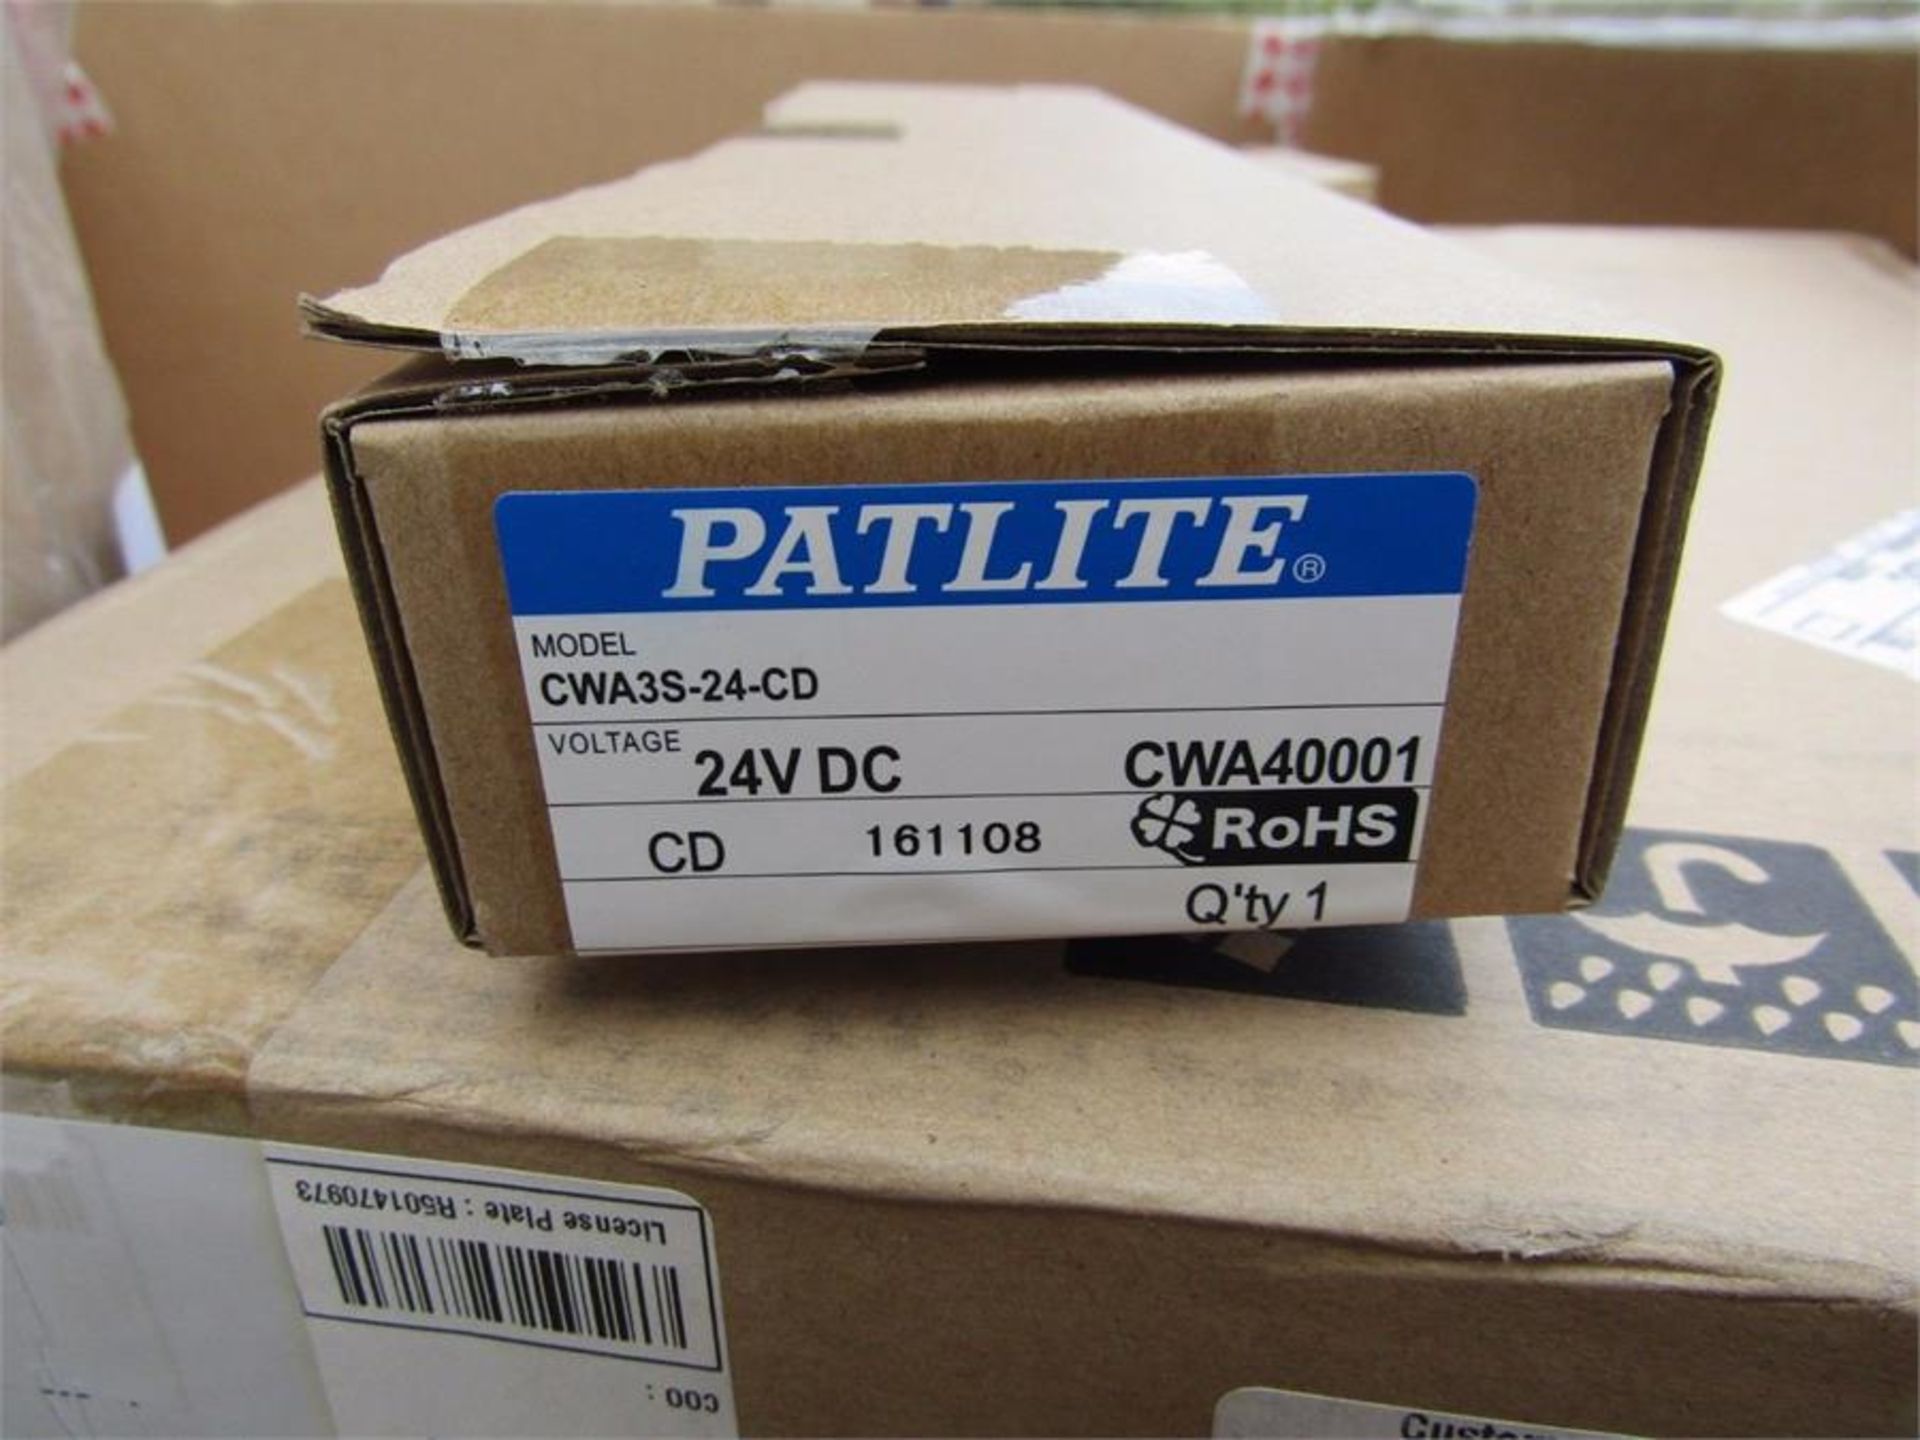 Patlite CWA3S-24-CD LED Light Strip 300mm White 24VDC IP65 - 1005 3008643236 - Image 2 of 2